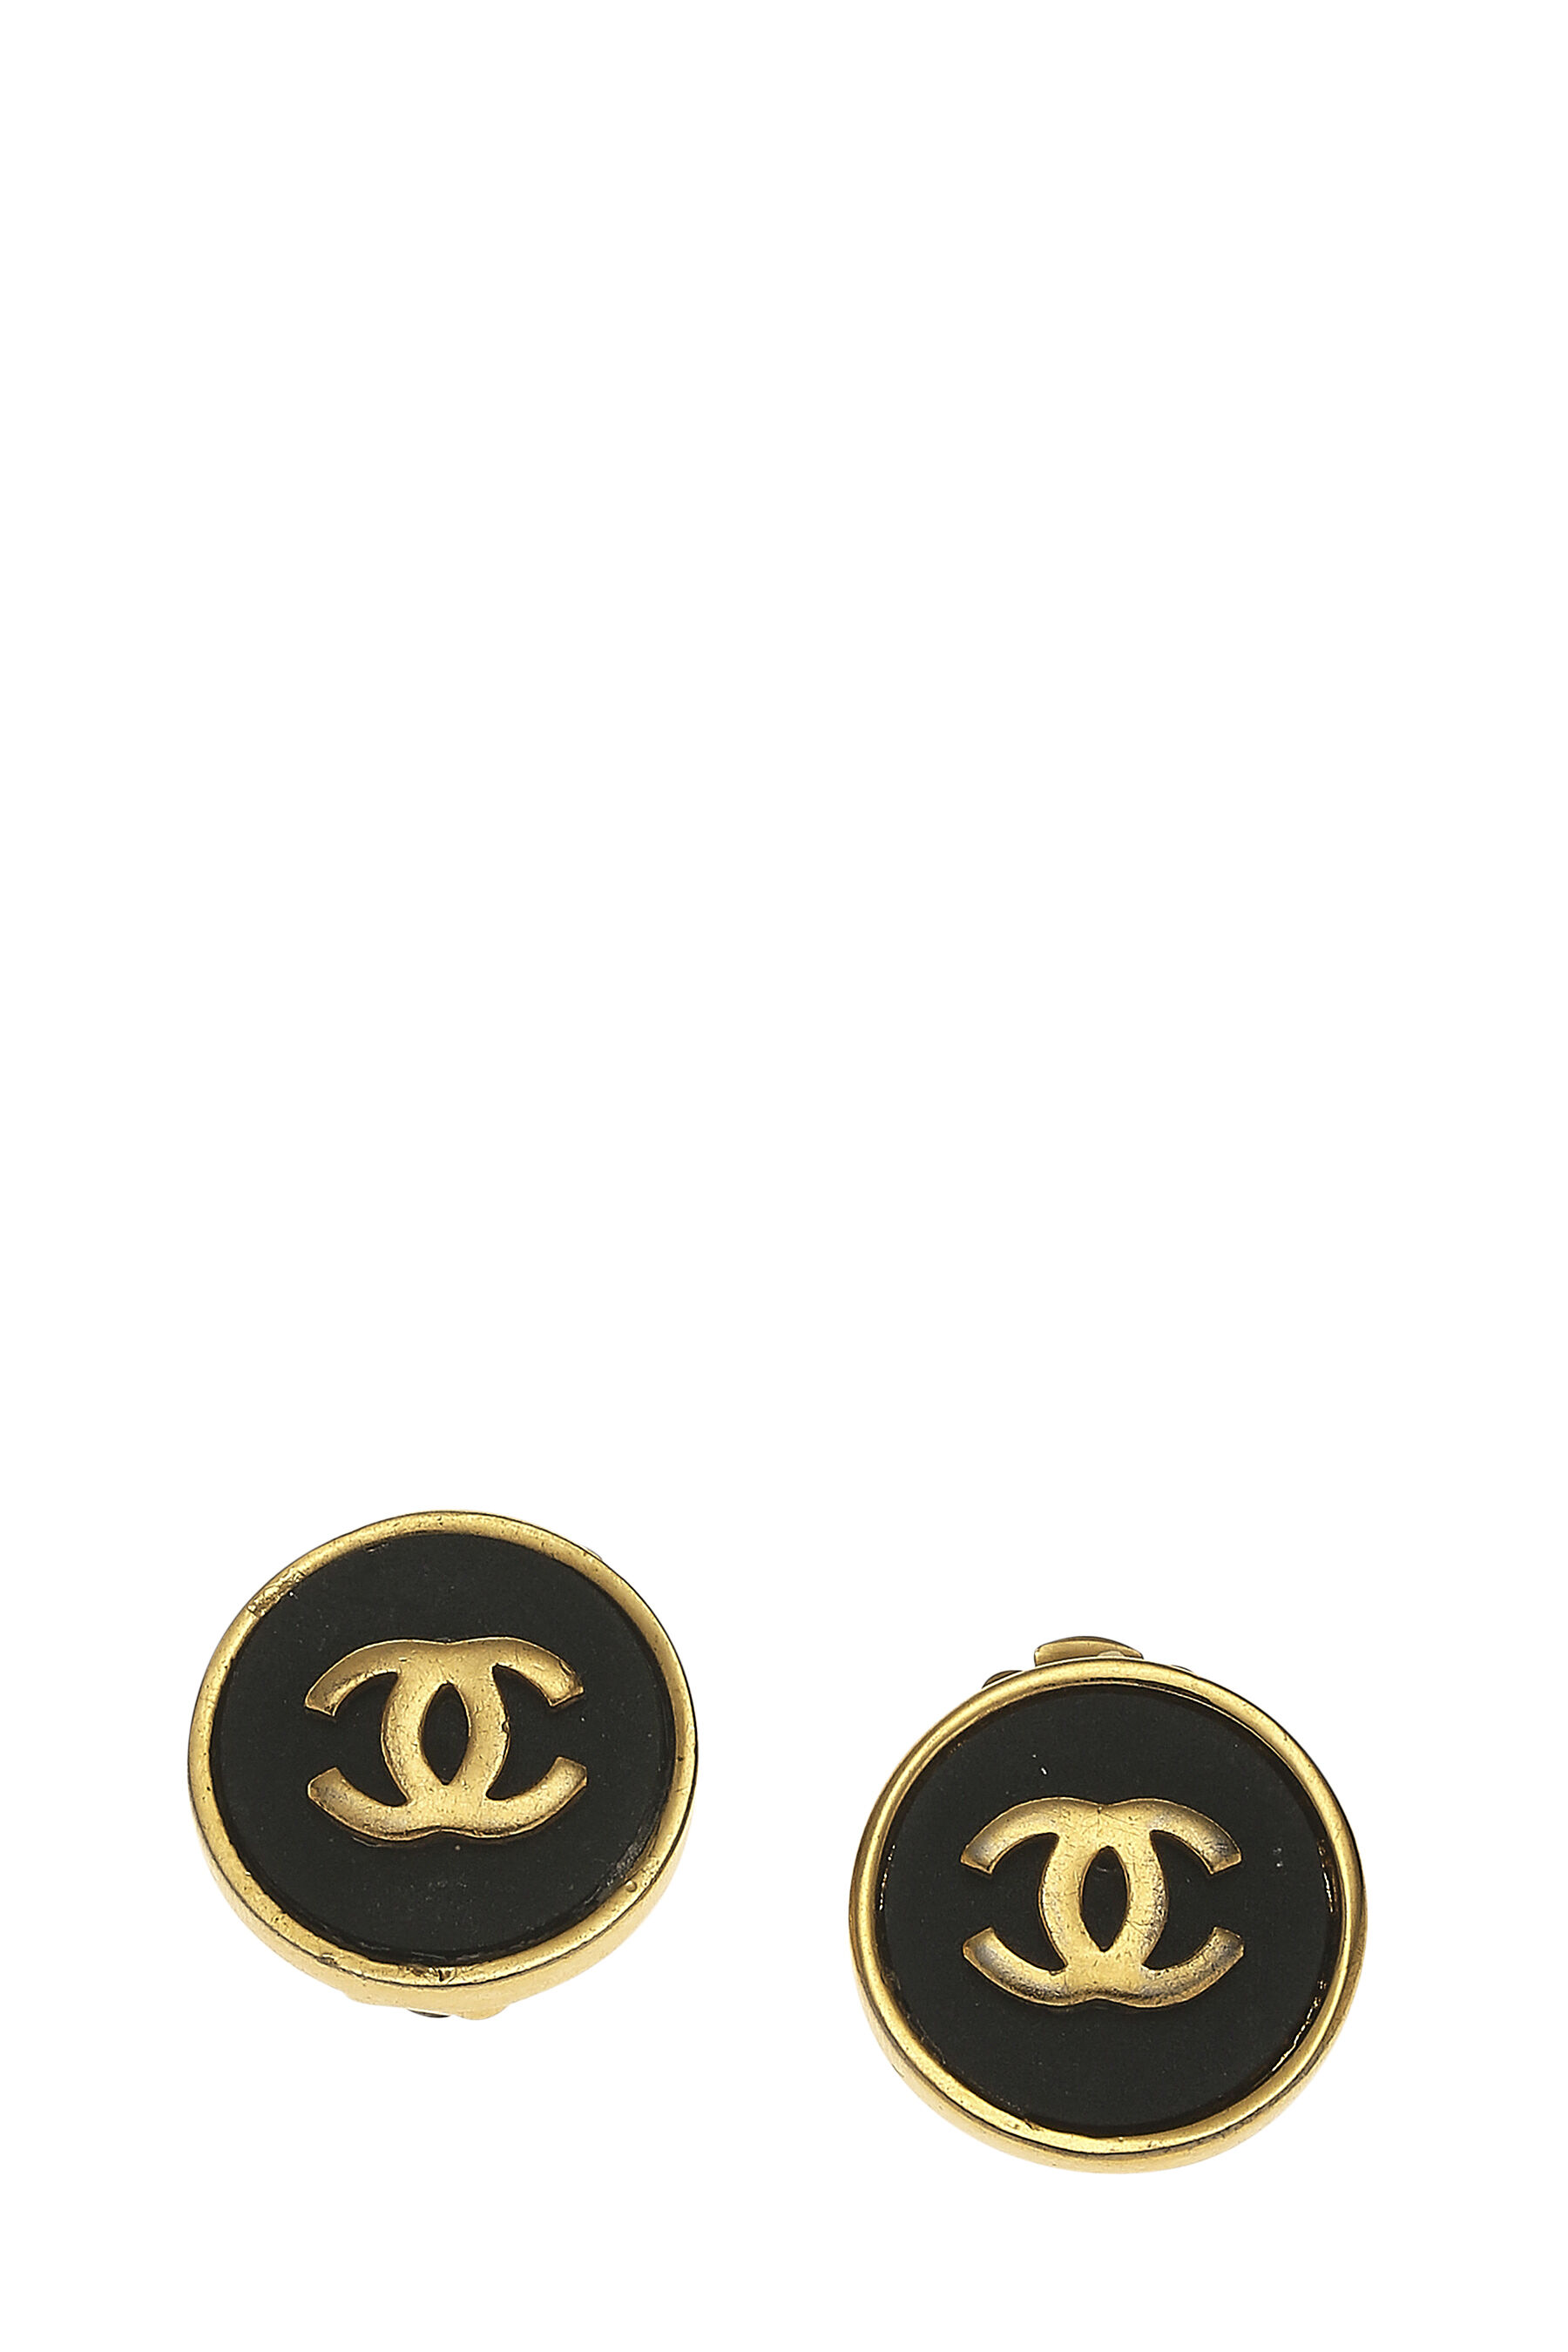 Chanel Gold & Black 'CC' Button Earrings Q6J04Q0ZDB022